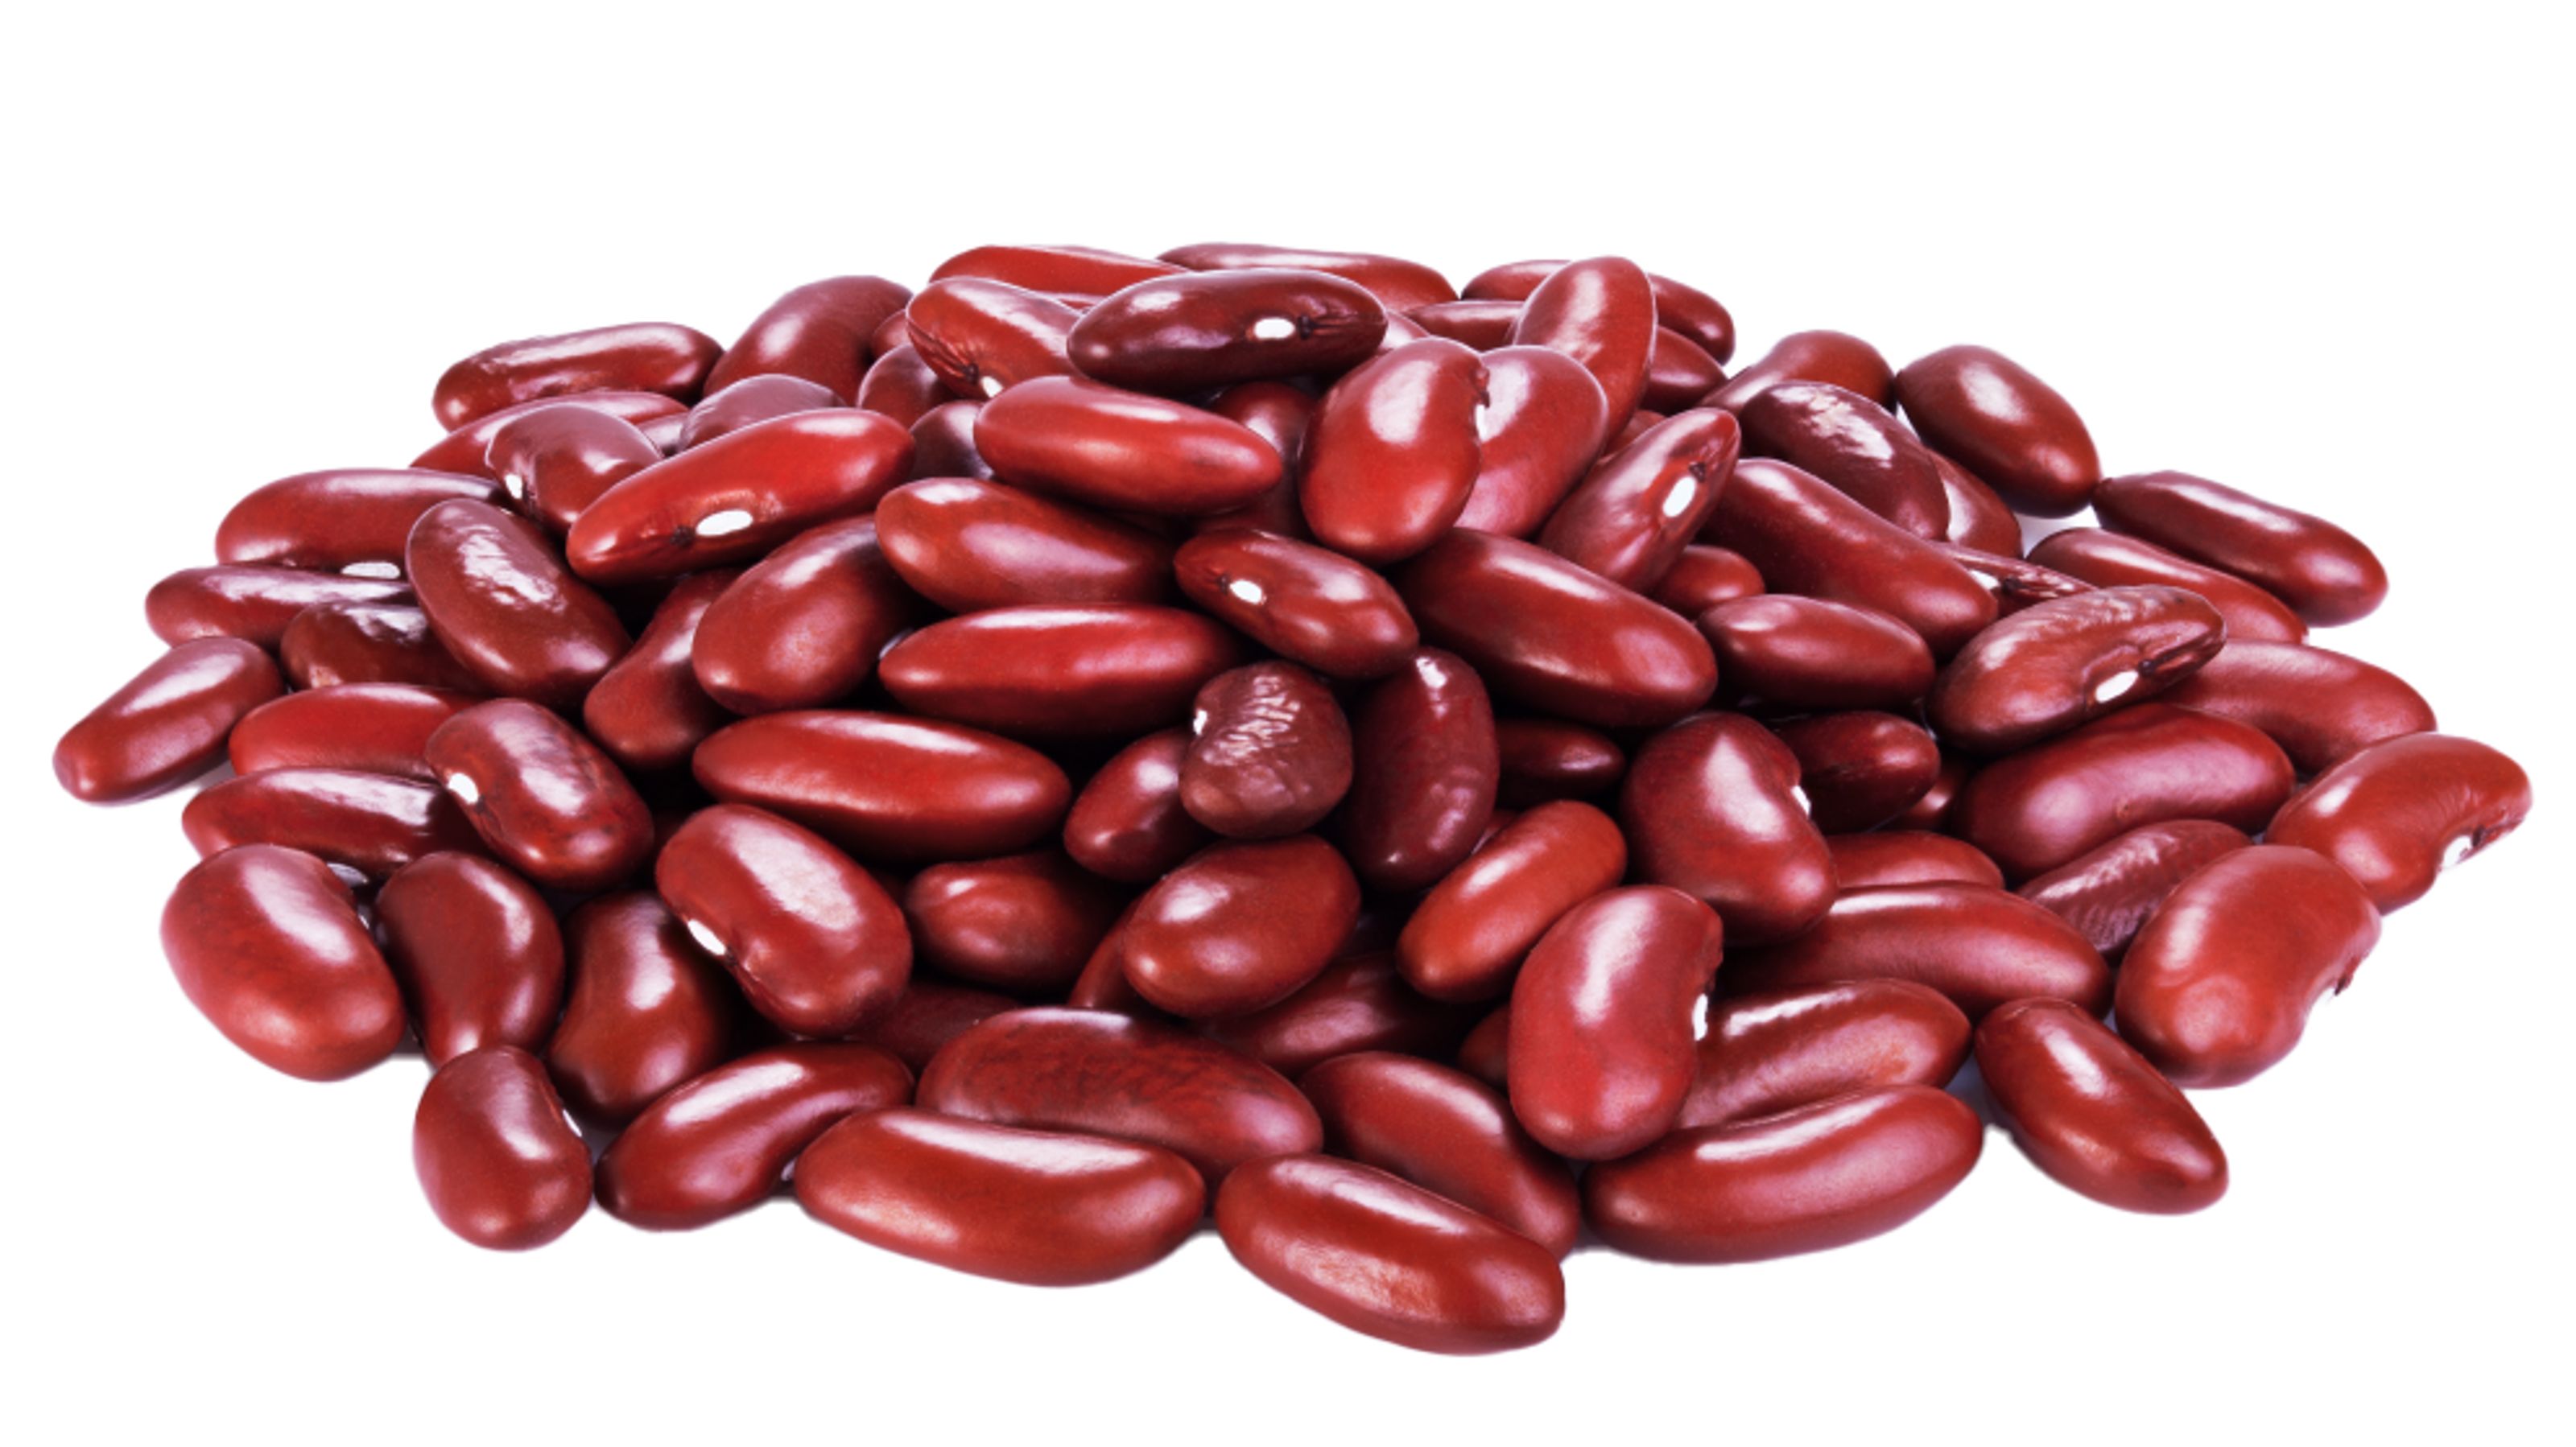 Buhler Red kidney beans